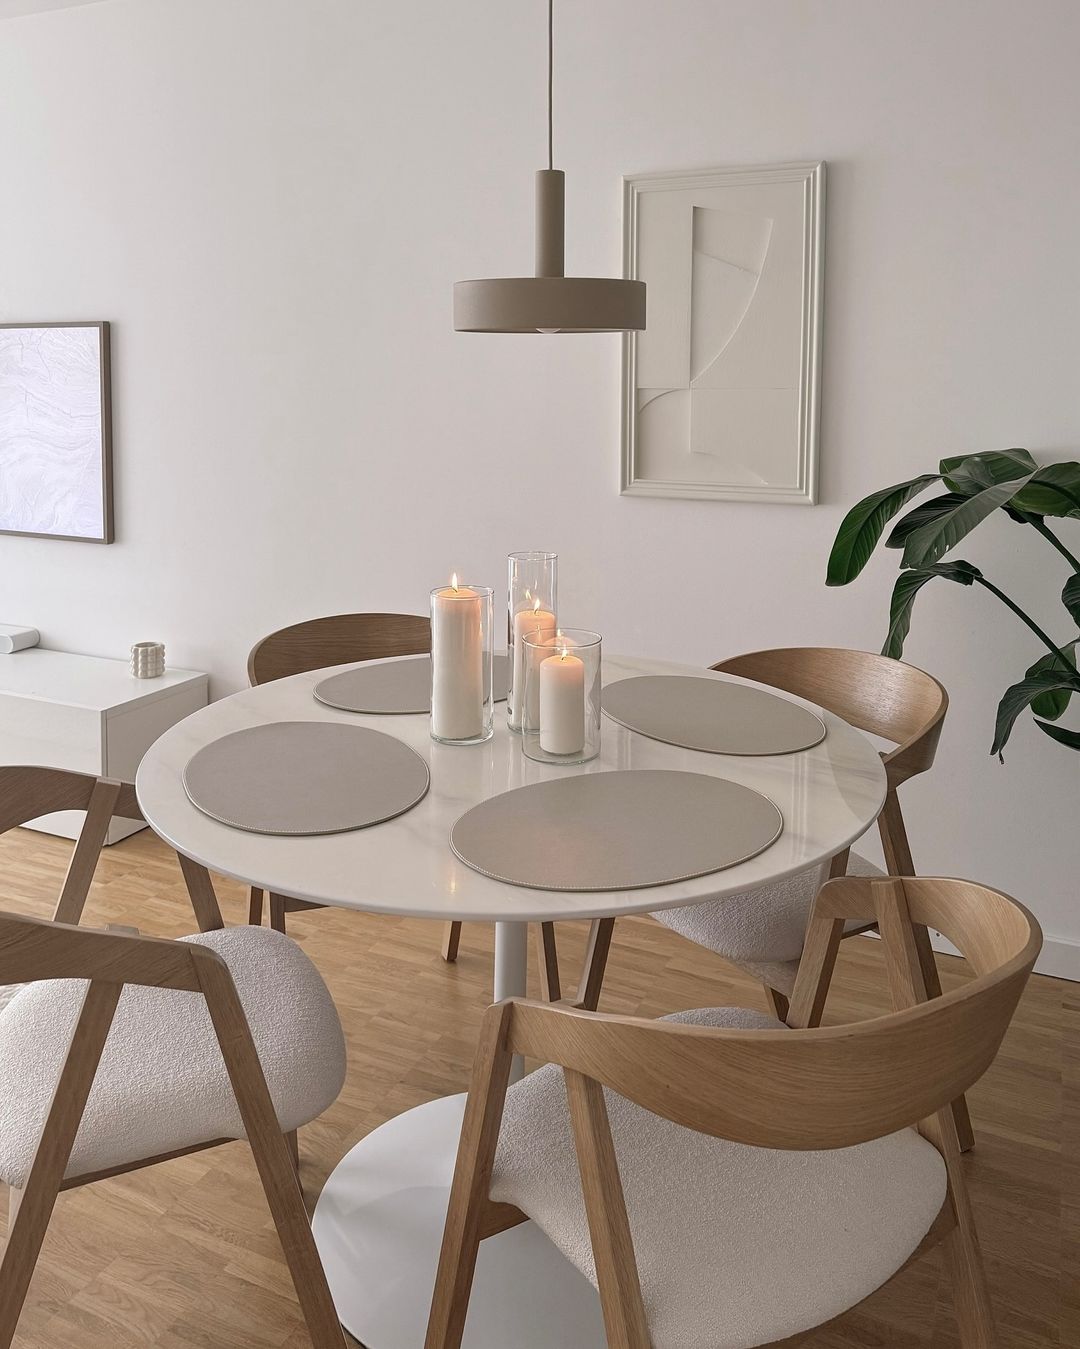 desain ruang makan minimalis 02 » Ide Desain Ruang Makan Minimalis Berkonsep Monokrom